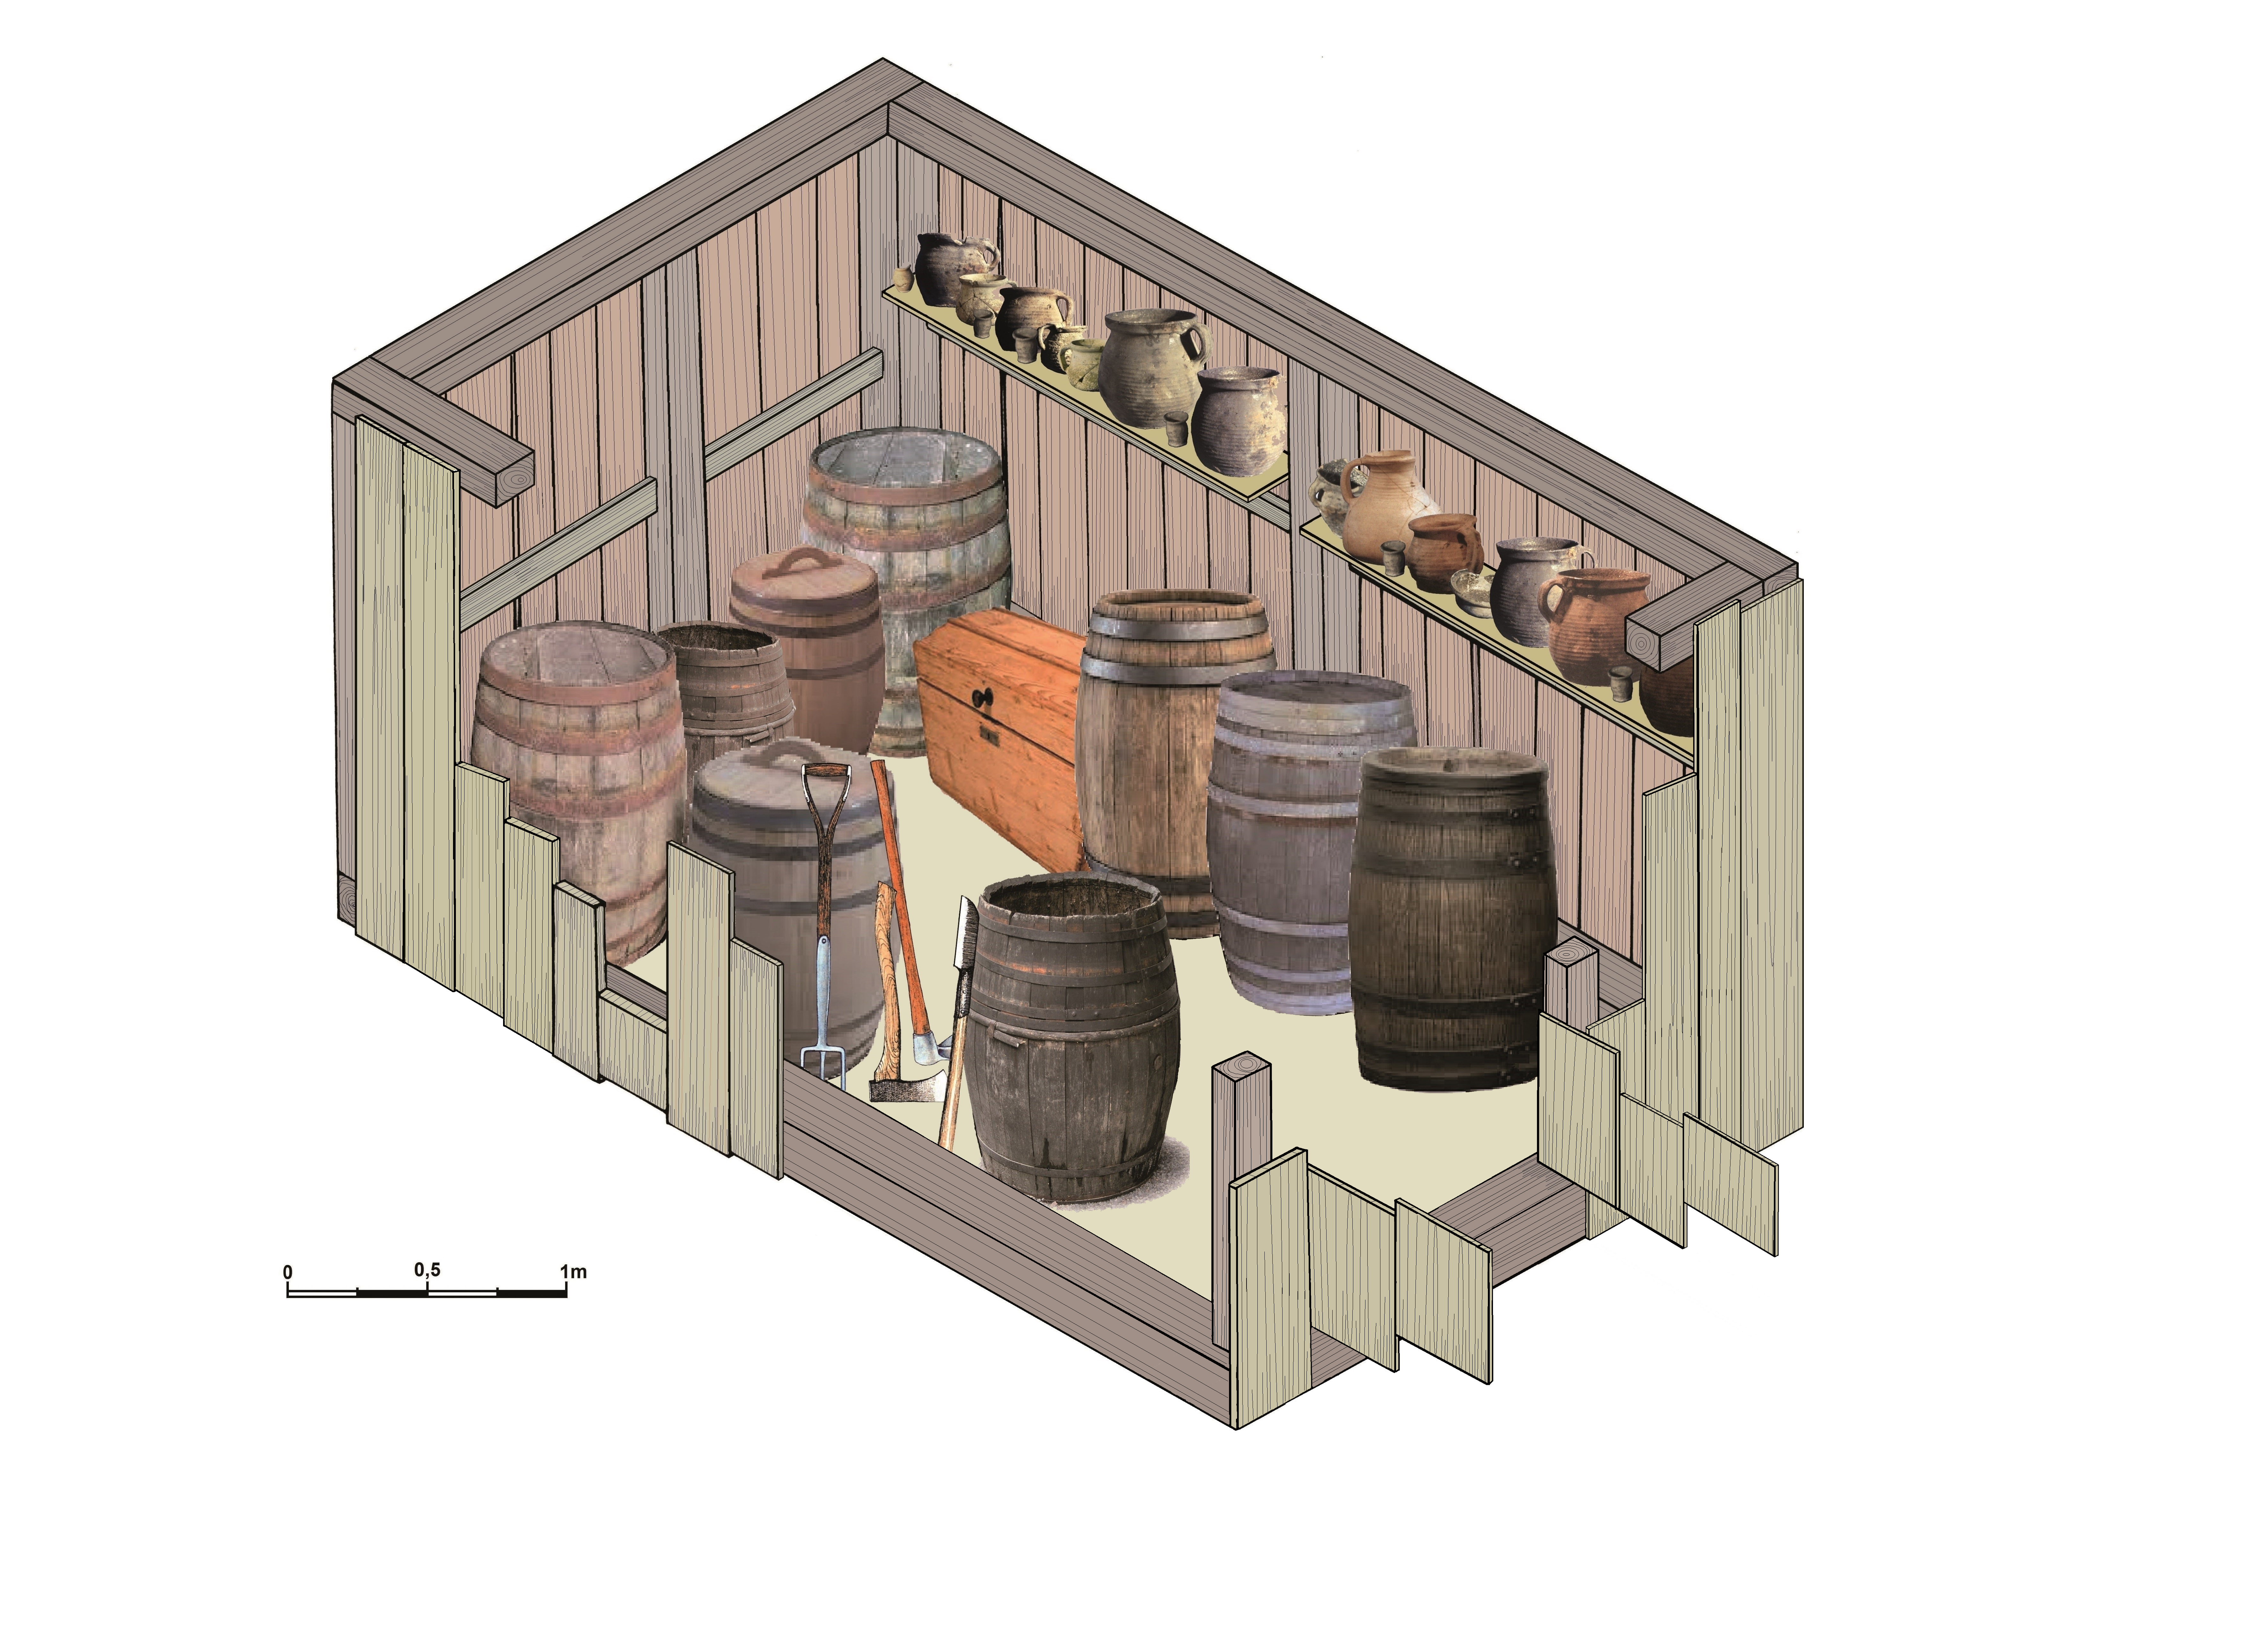 Cottbus Keller 130: Lebensbild des rekonstruierten Kellers mit neun Fässern, einer Truhe und den landwirtschaftlichen Geräten zwischen den Fässern h und i. Auf den Regalen stehen weitere Vorratsgefäße.